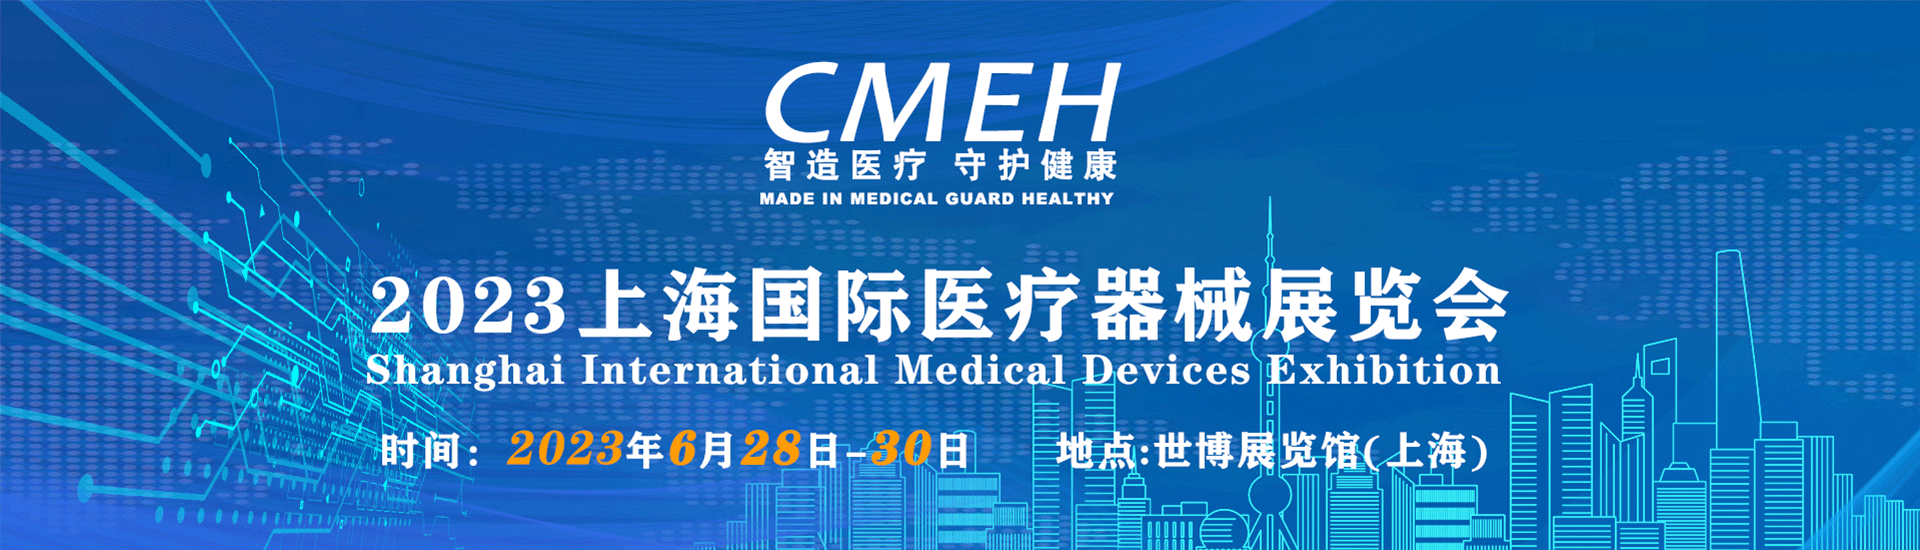 2024年医博会-医疗博览会-国际医疗器械展会